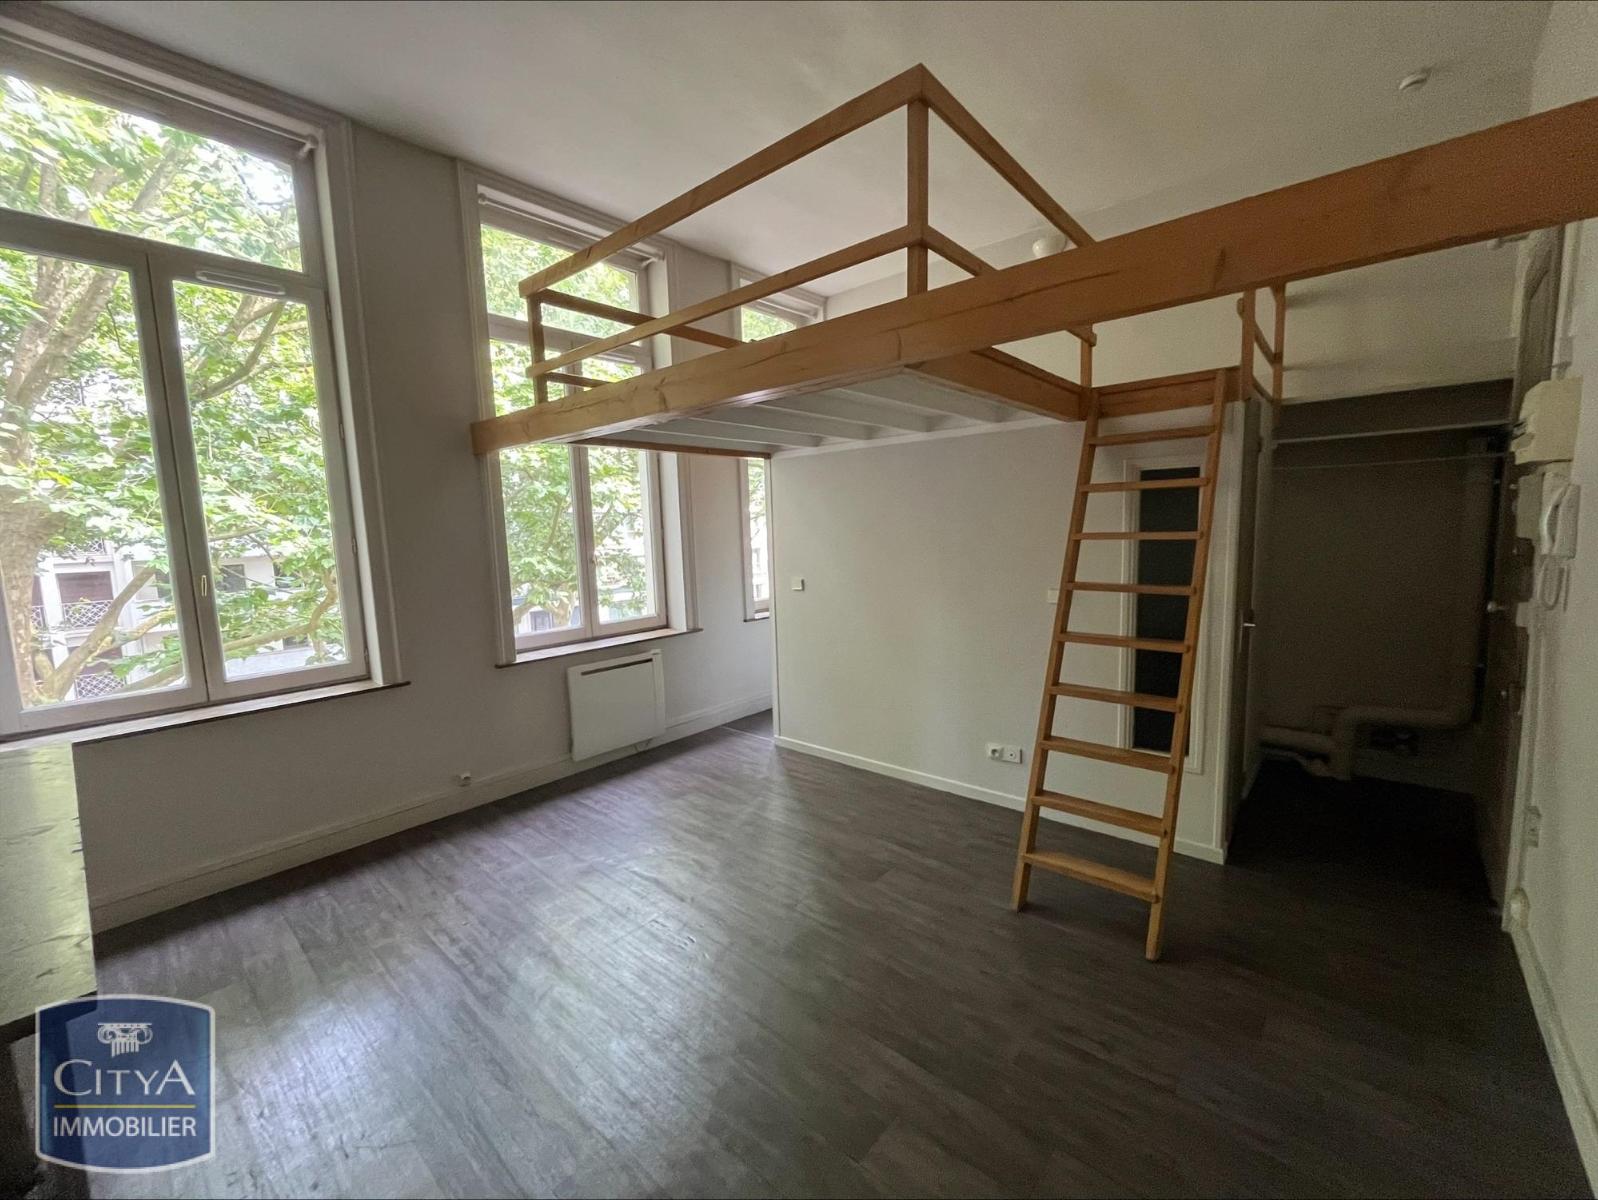 Appartement 1 pièce - 18m² - LILLE